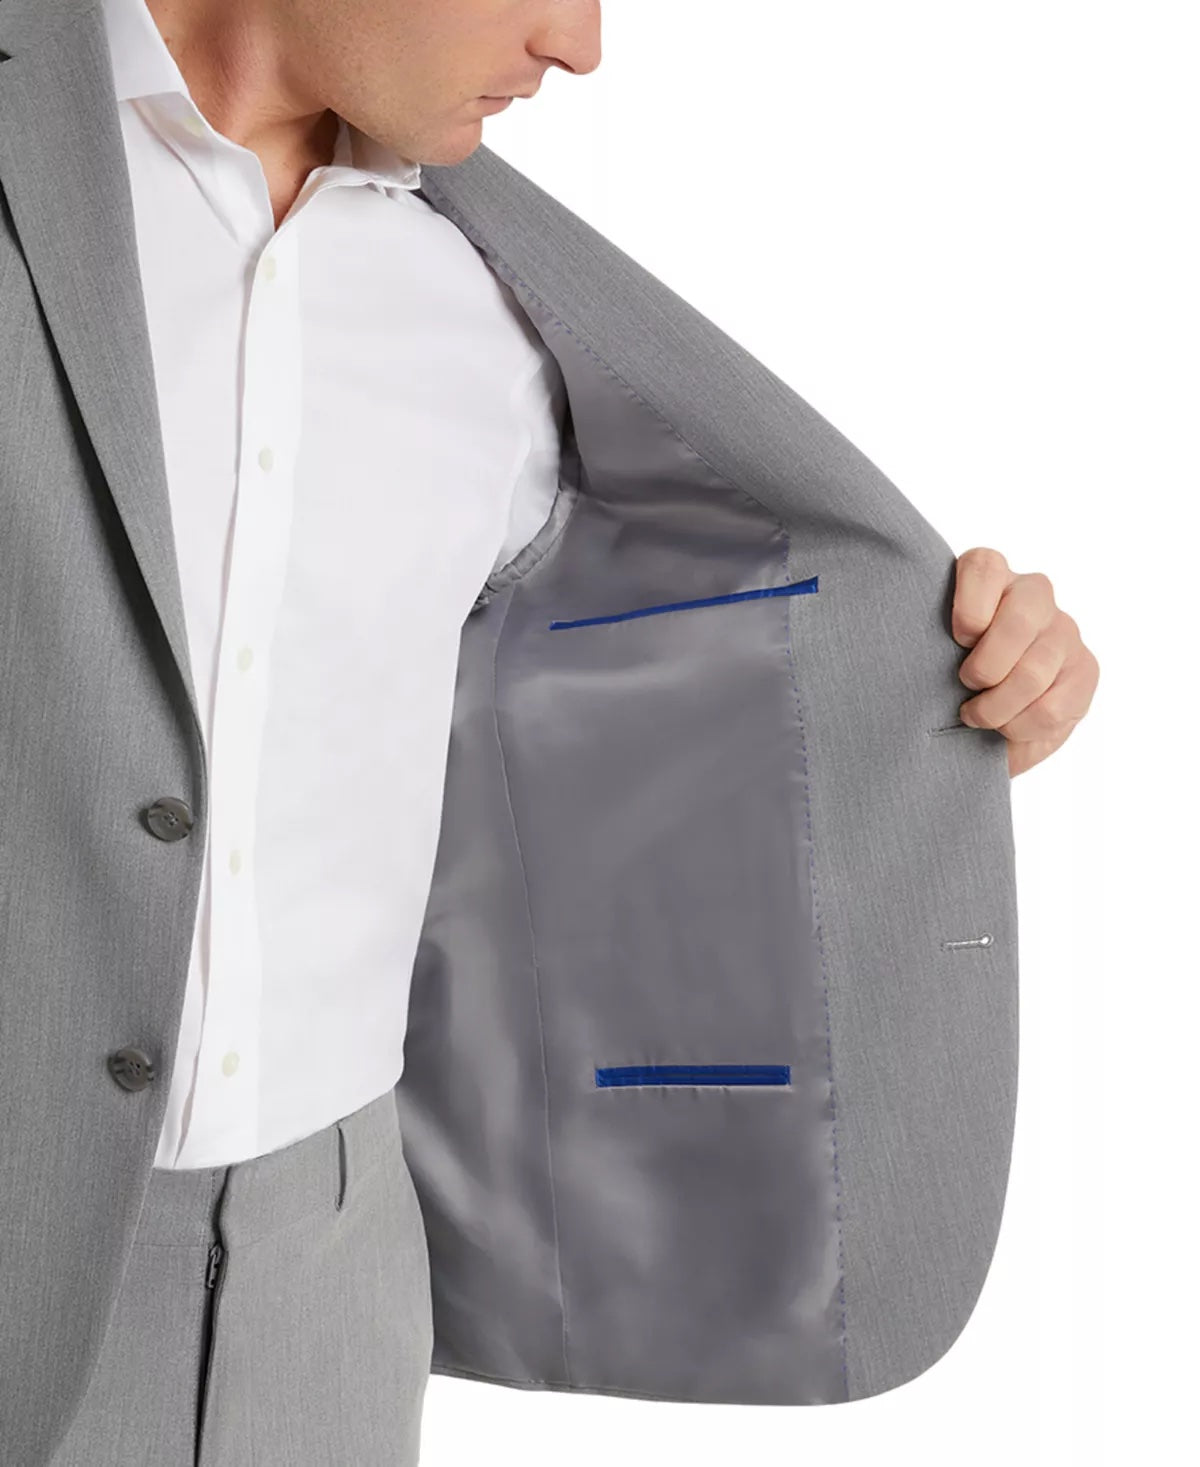 Kenneth Cole Reaction Mens Slim-Fit Suit Jacket 48R Techni-Cole Light Grey